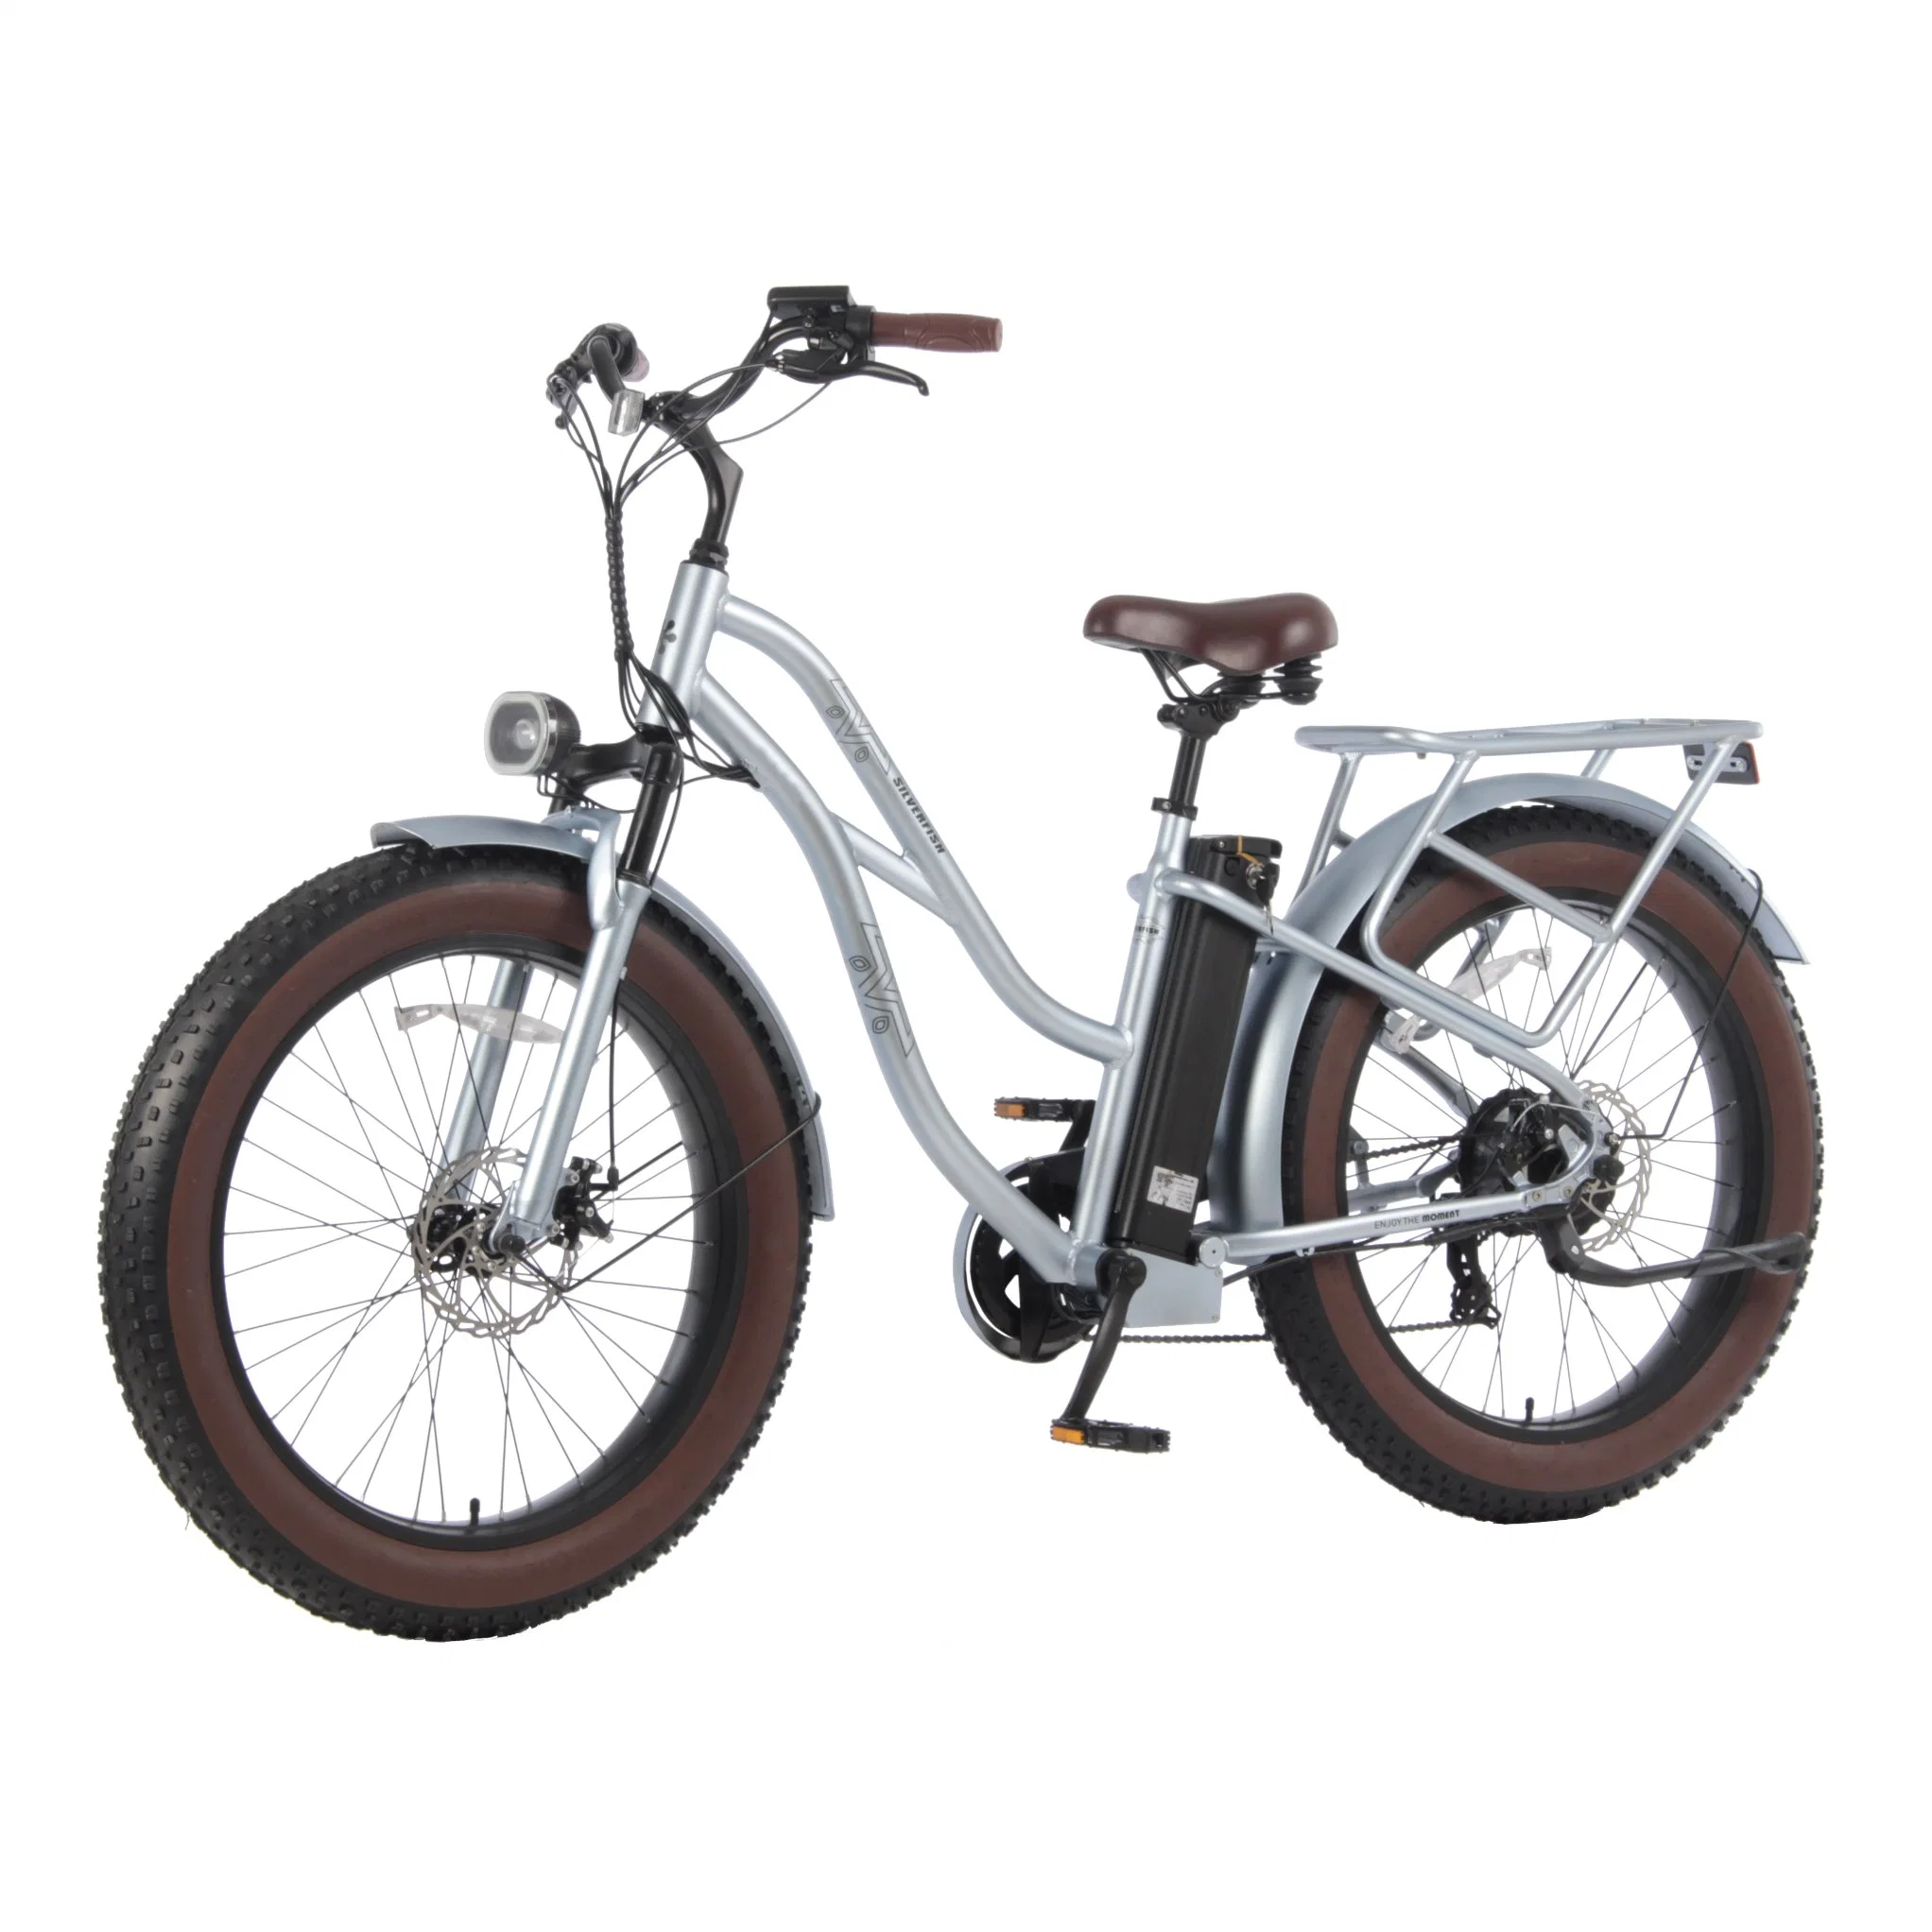 Transporte mayorista de seguridad eBike resistente con batería de litio 36V 10,4ah Bicicleta eléctrica